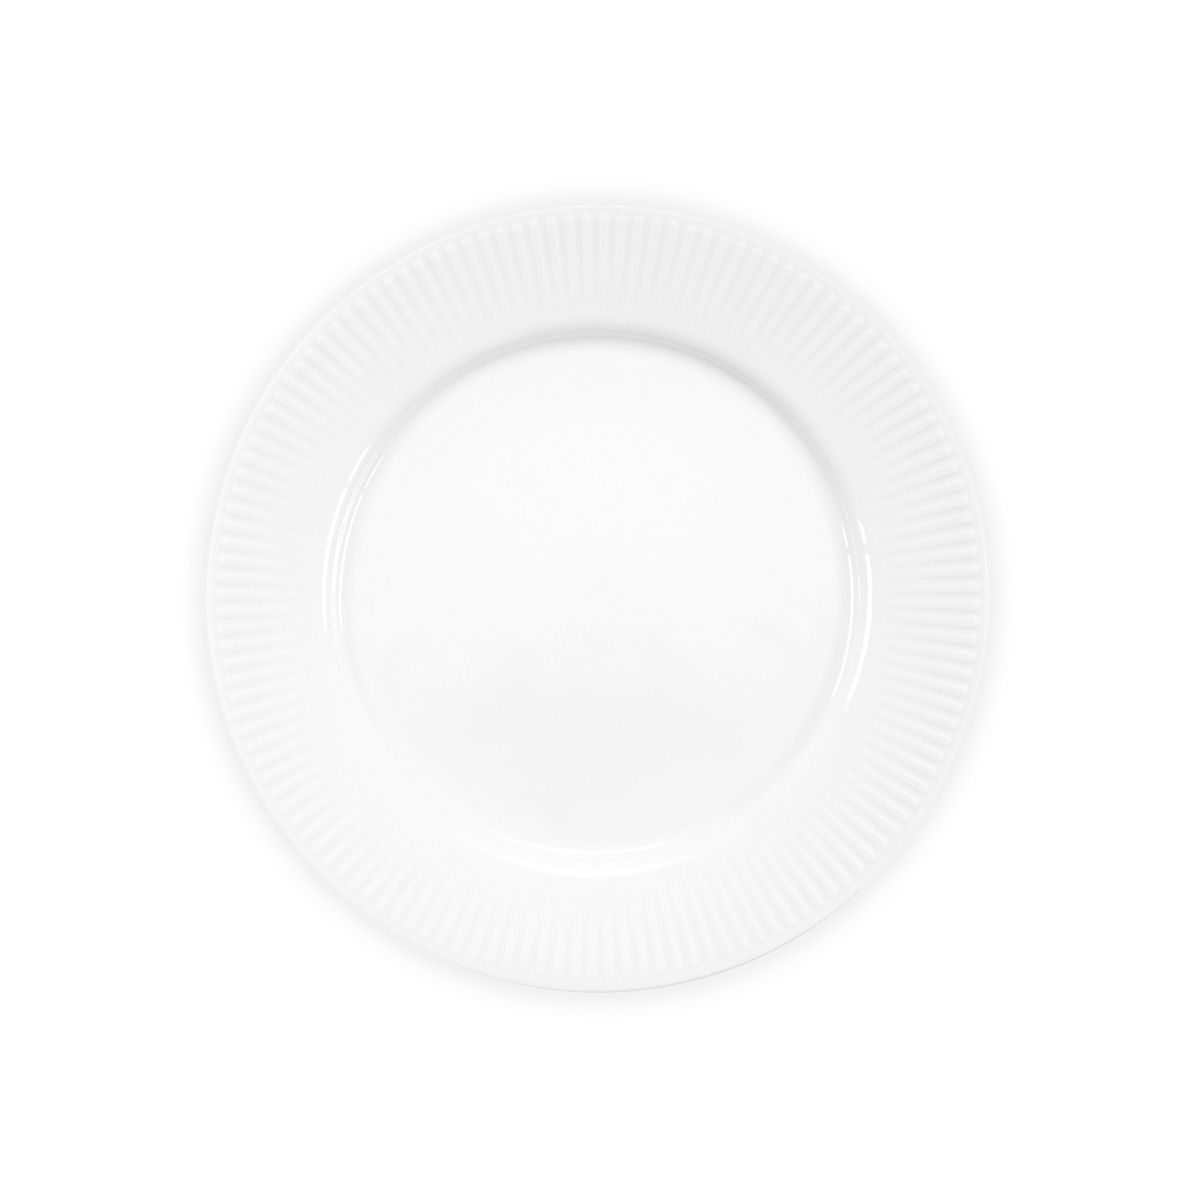 Bodové douro obědové desky porcelán bílé, 4 ks.